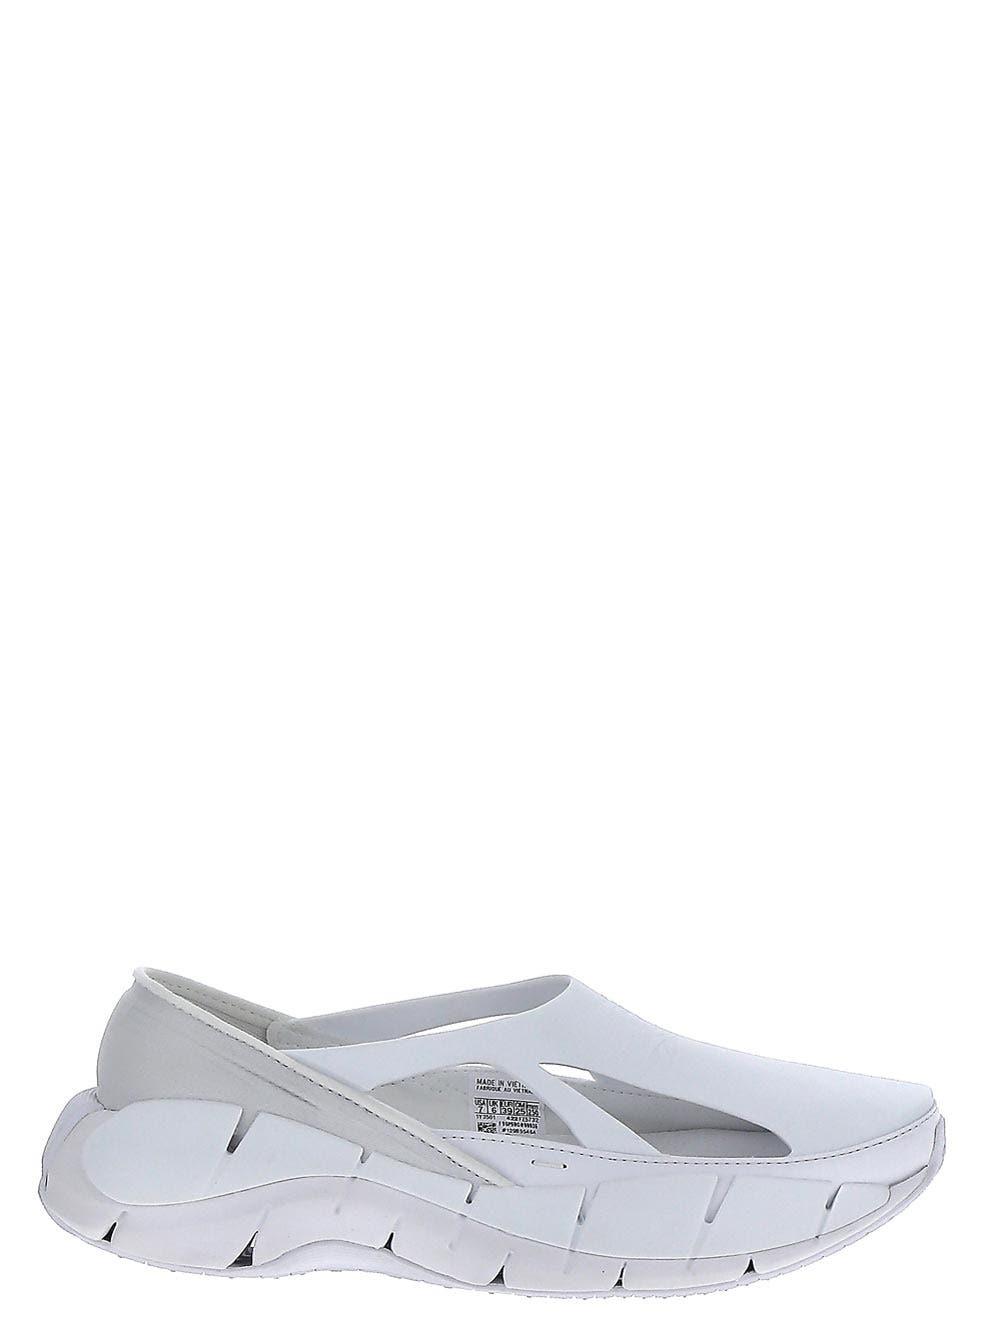 Reebok X Maison Margiela Rubber Project 0 Cr Sneakers in White | Lyst